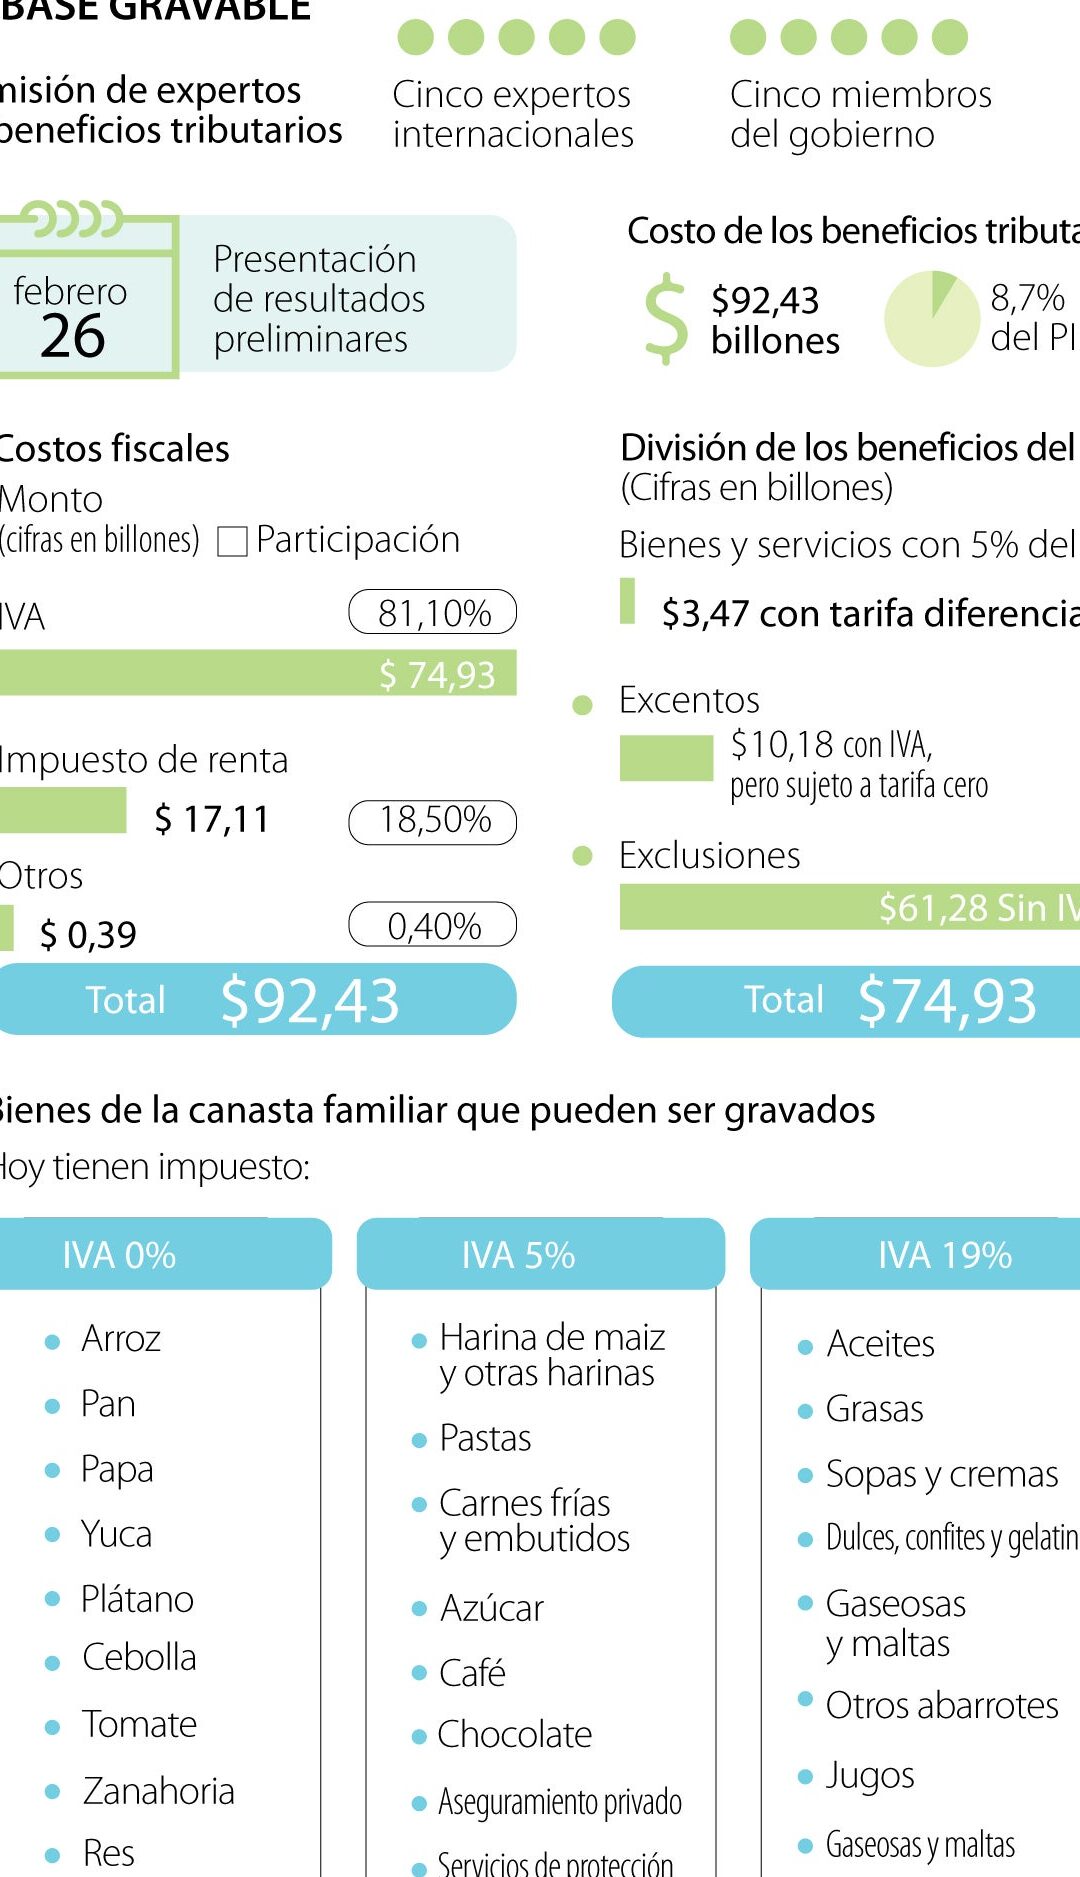 Lista de Productos Exentos de IVA en Venezuela